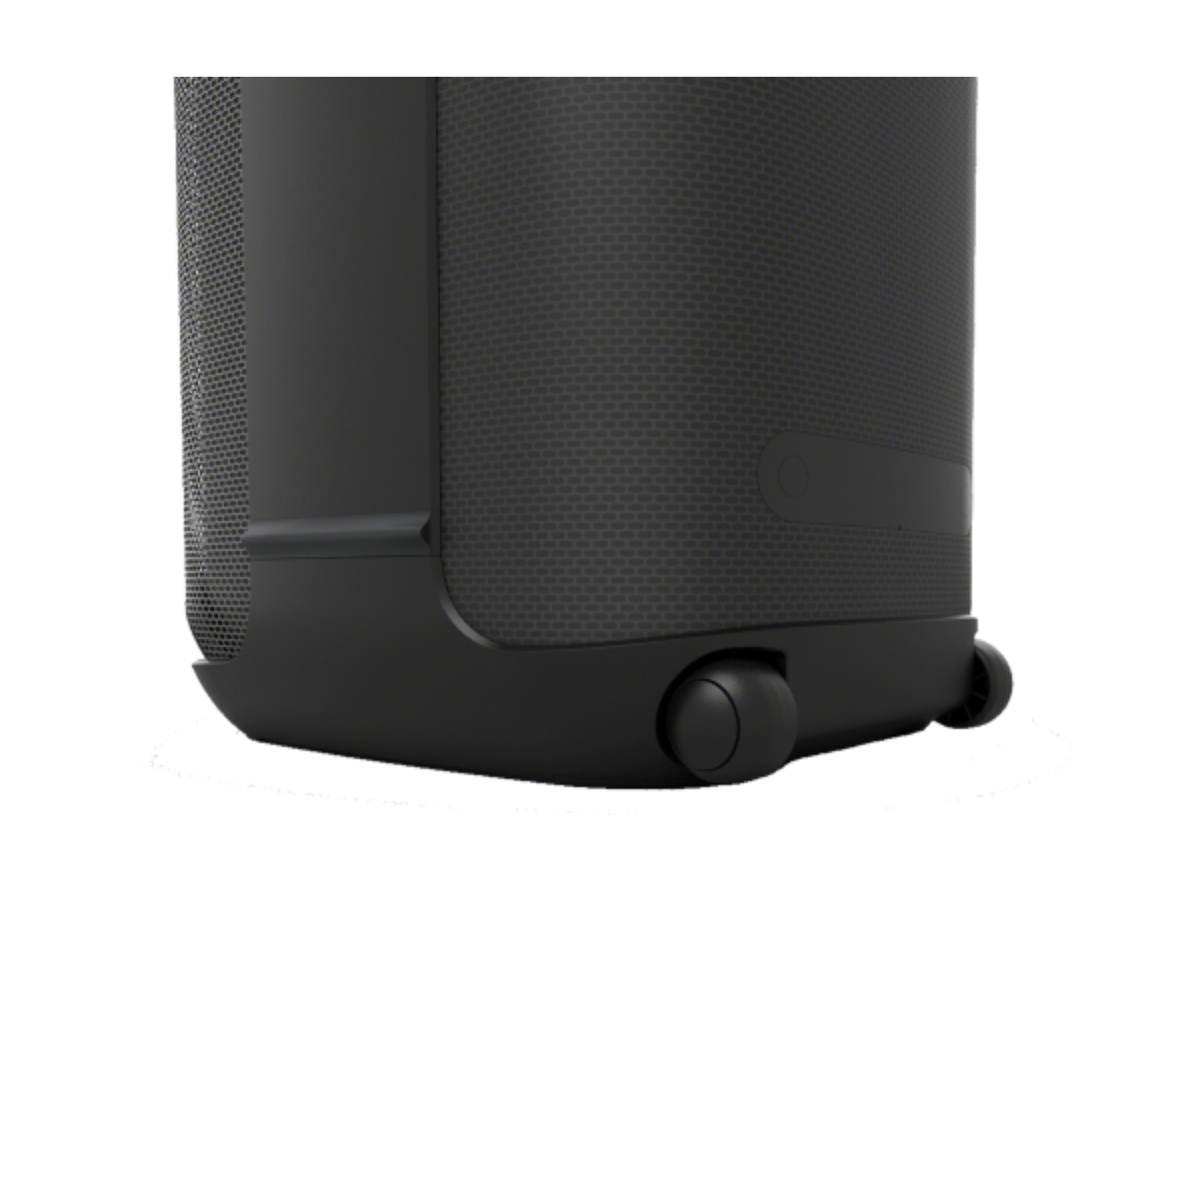 Sony XV800 X-Series One Box Hifi Wireless Party Speaker, 77 W, Black, SRS-XV800